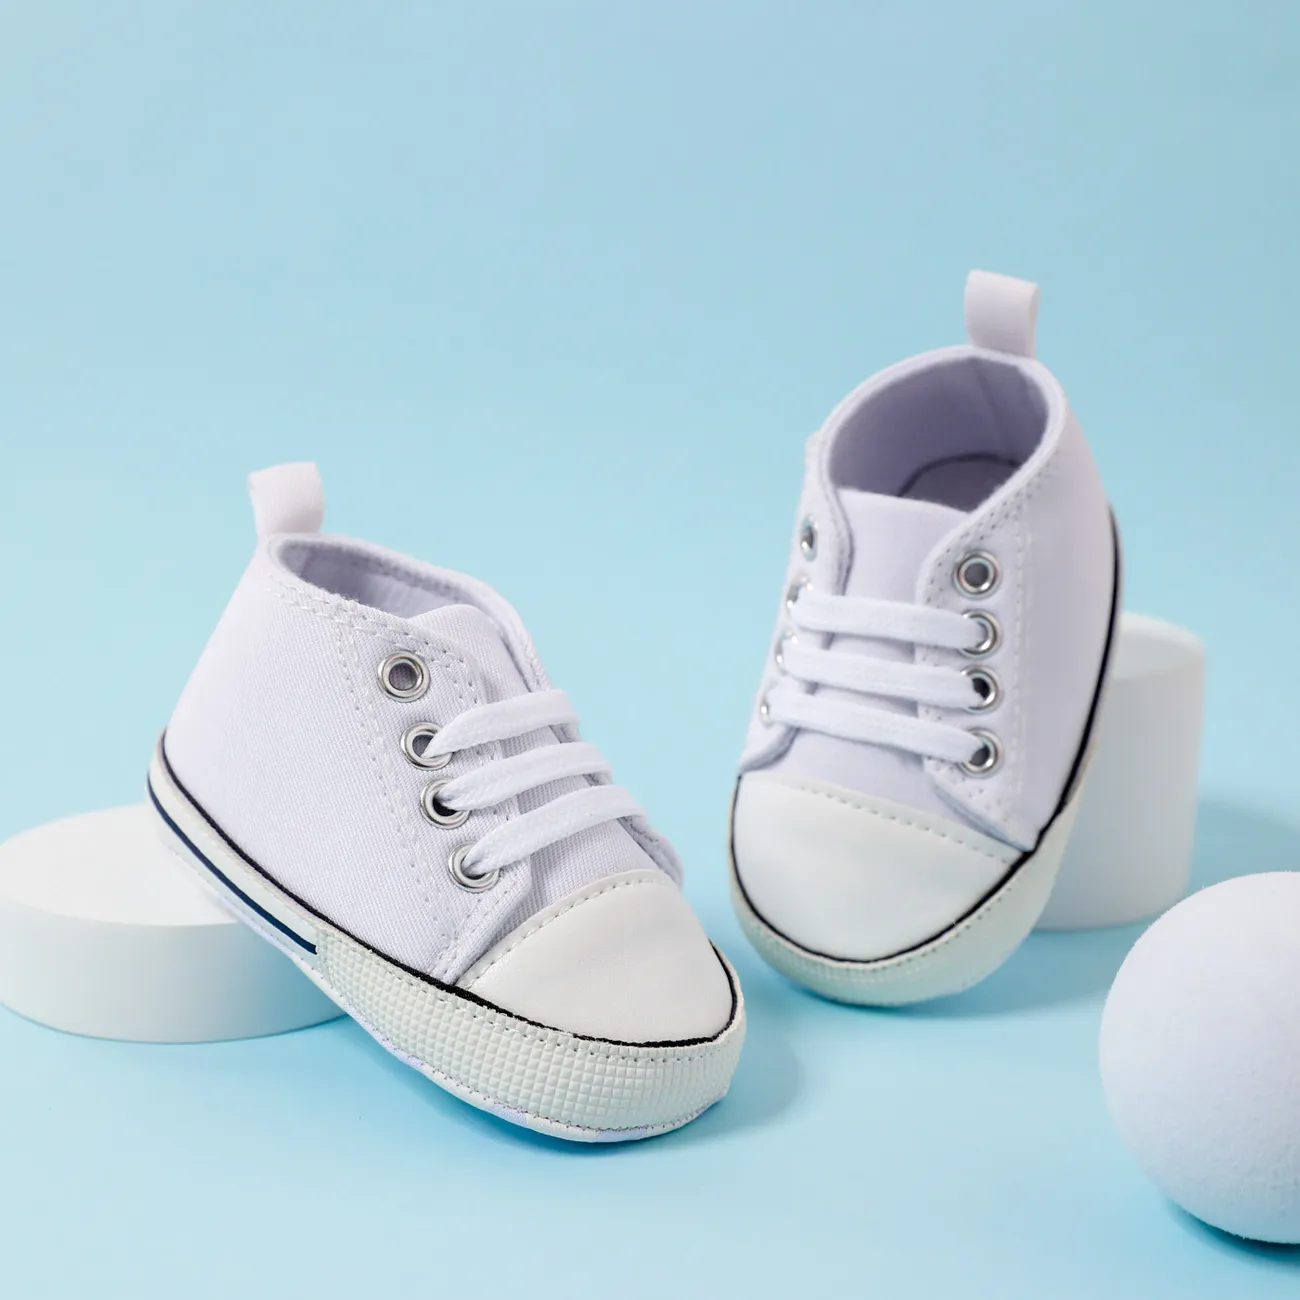 Governable fællesskab fort Baby / Toddler Simple Solid Lace Up Prewalker Shoes Only $5.99 PatPat US  Mobile